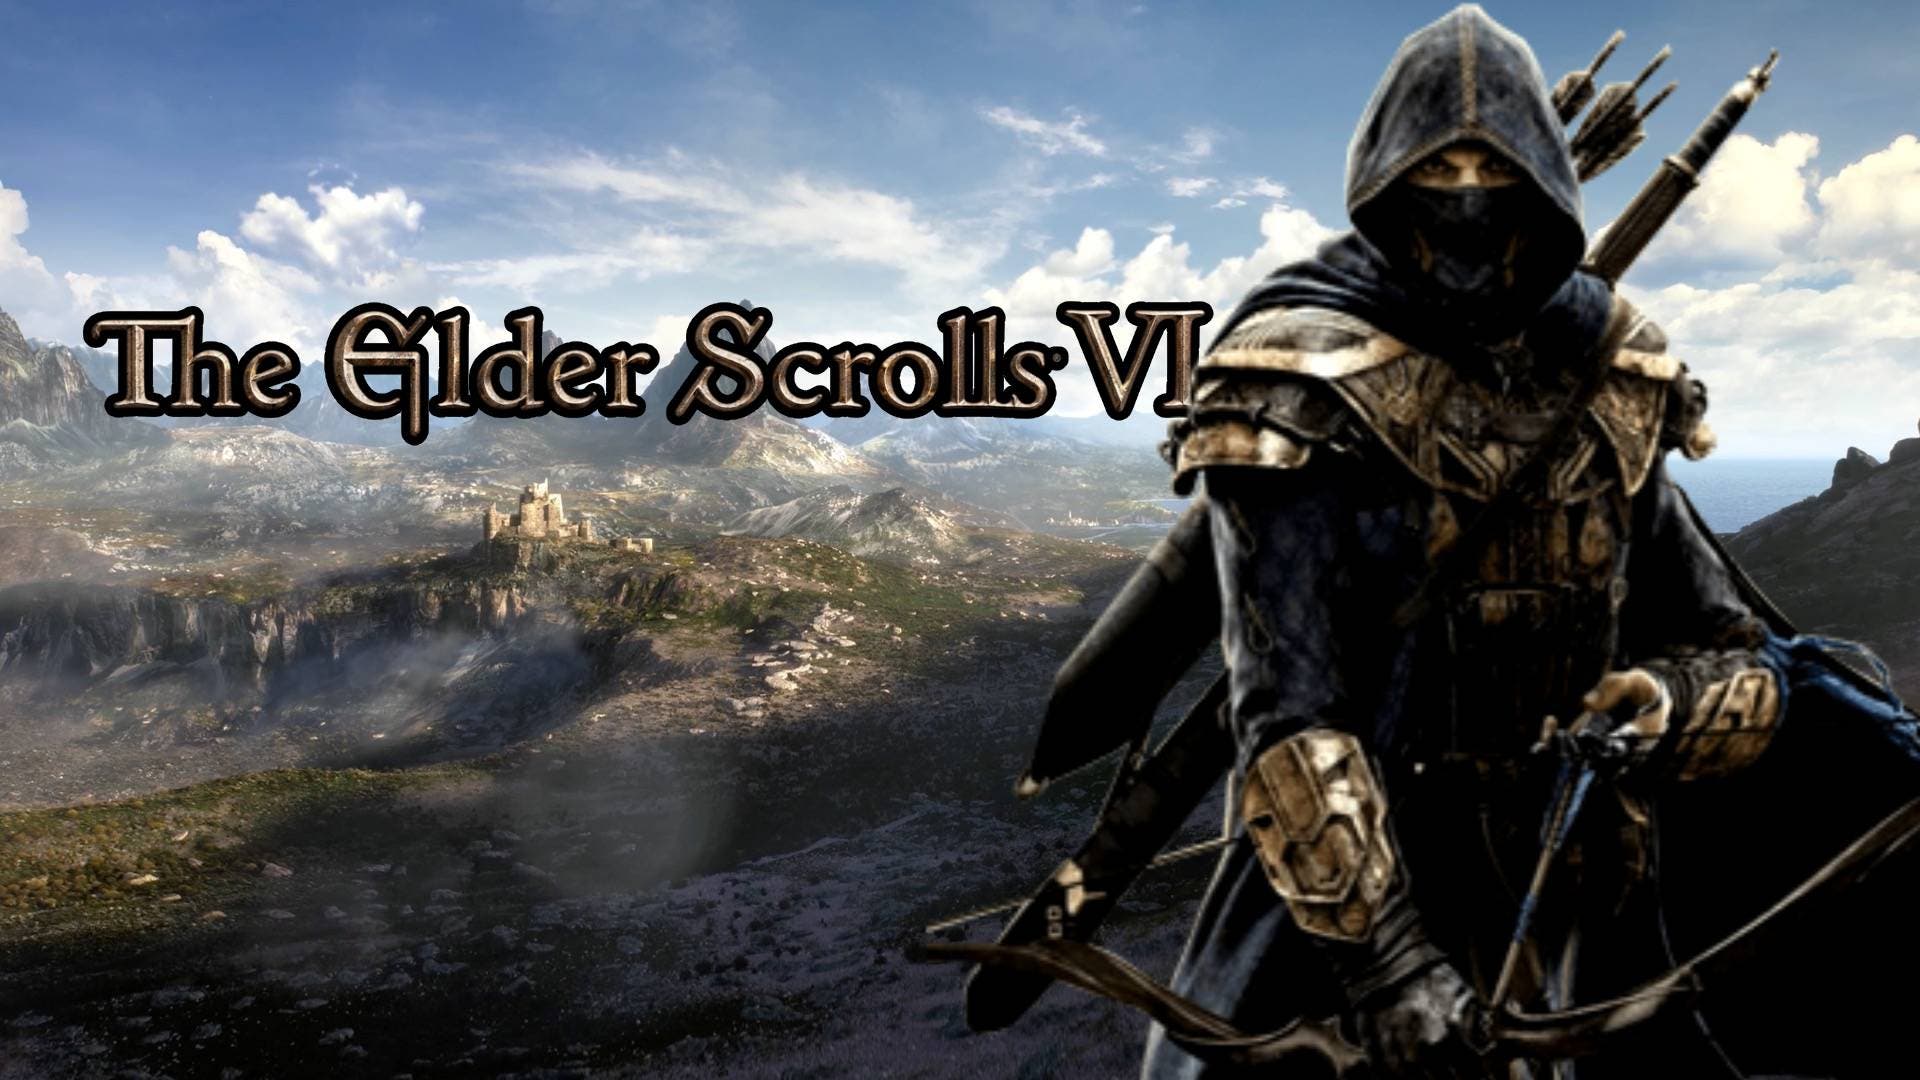 Phil Spencer não sabe se The Elder Scrolls 6 será exclusivo Xbox